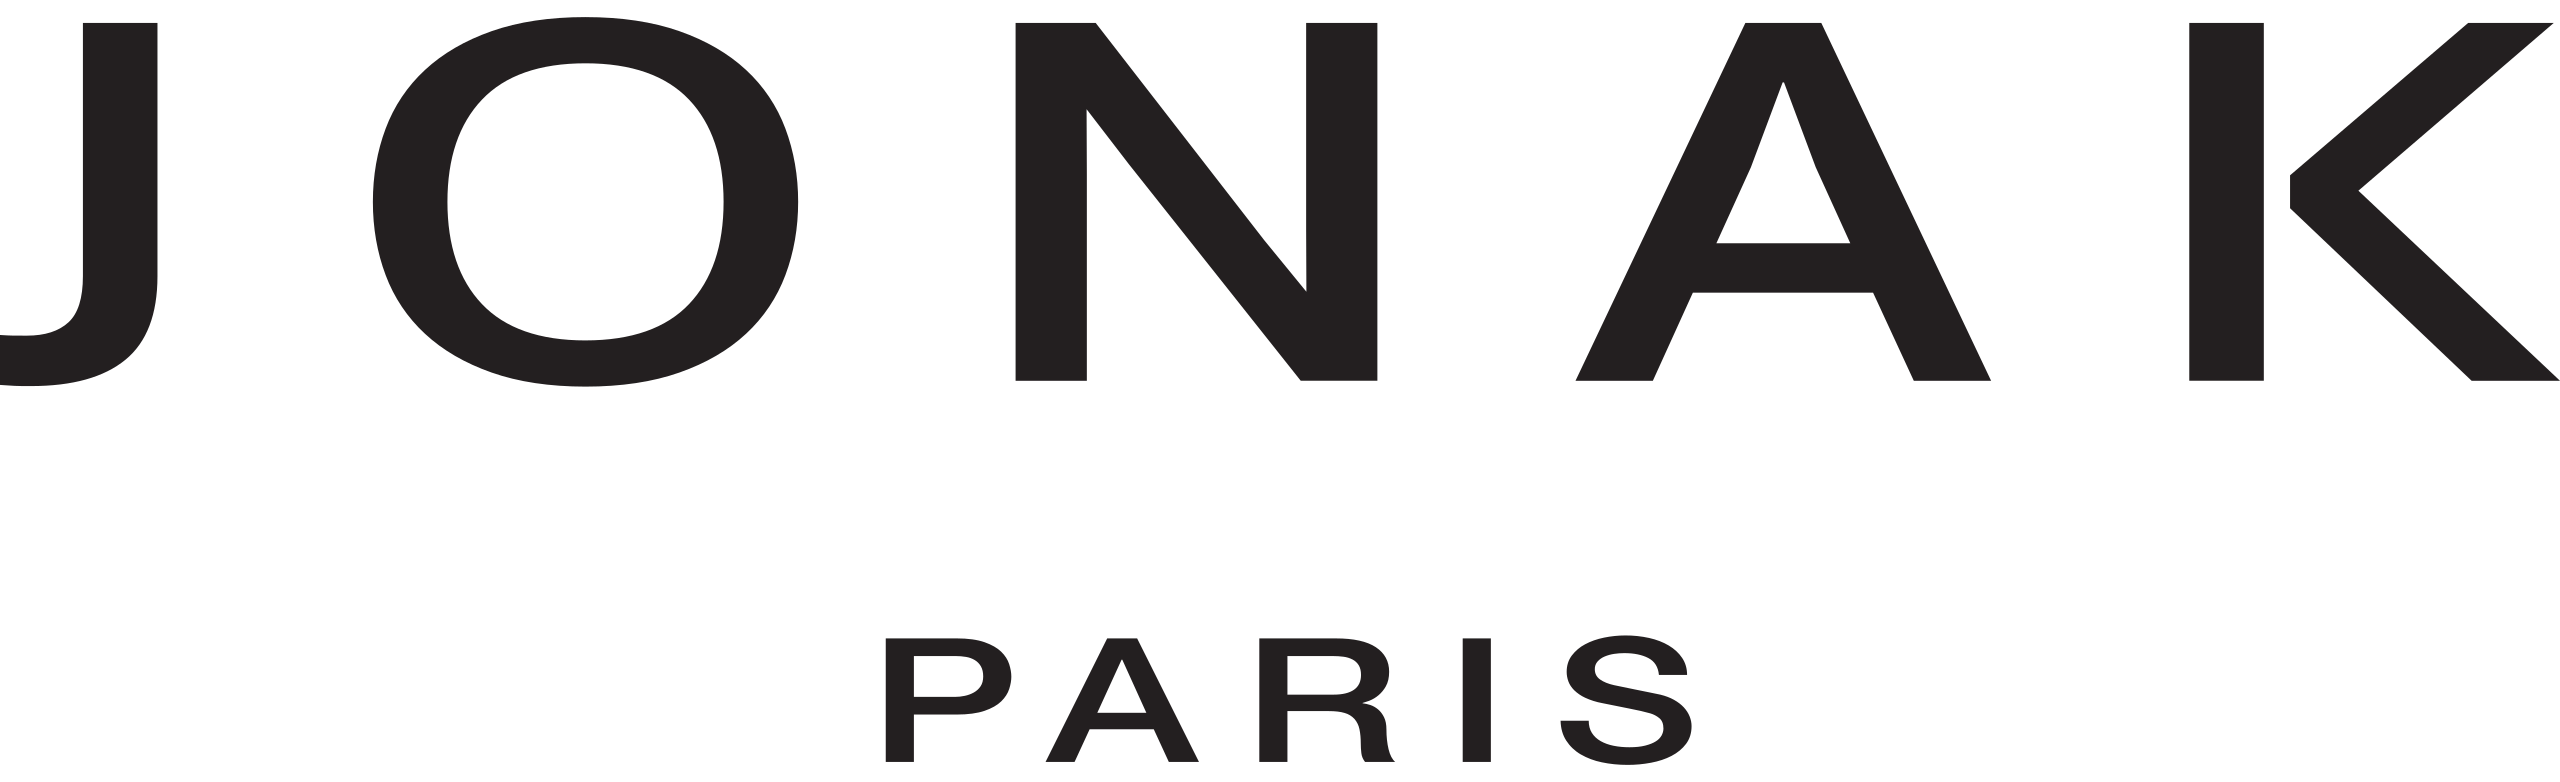 Archive logo - Jonak